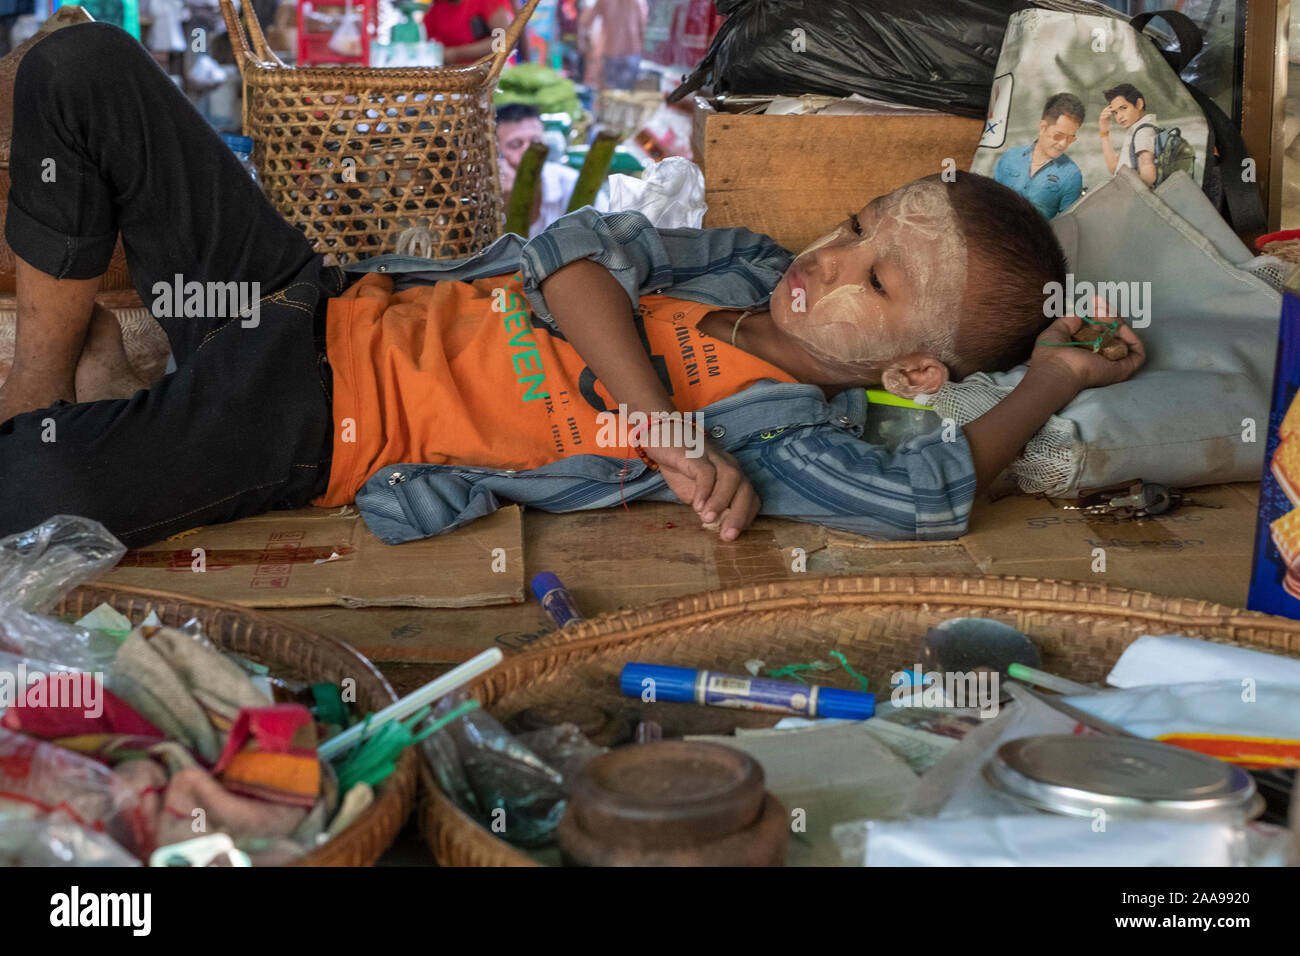 Giovane ragazzo birmano di 6-8 anni con una faccia in polvere (sunscreen) sdraiati su una coperta a sua madre di stallo di mercato come la vita passa da Foto Stock